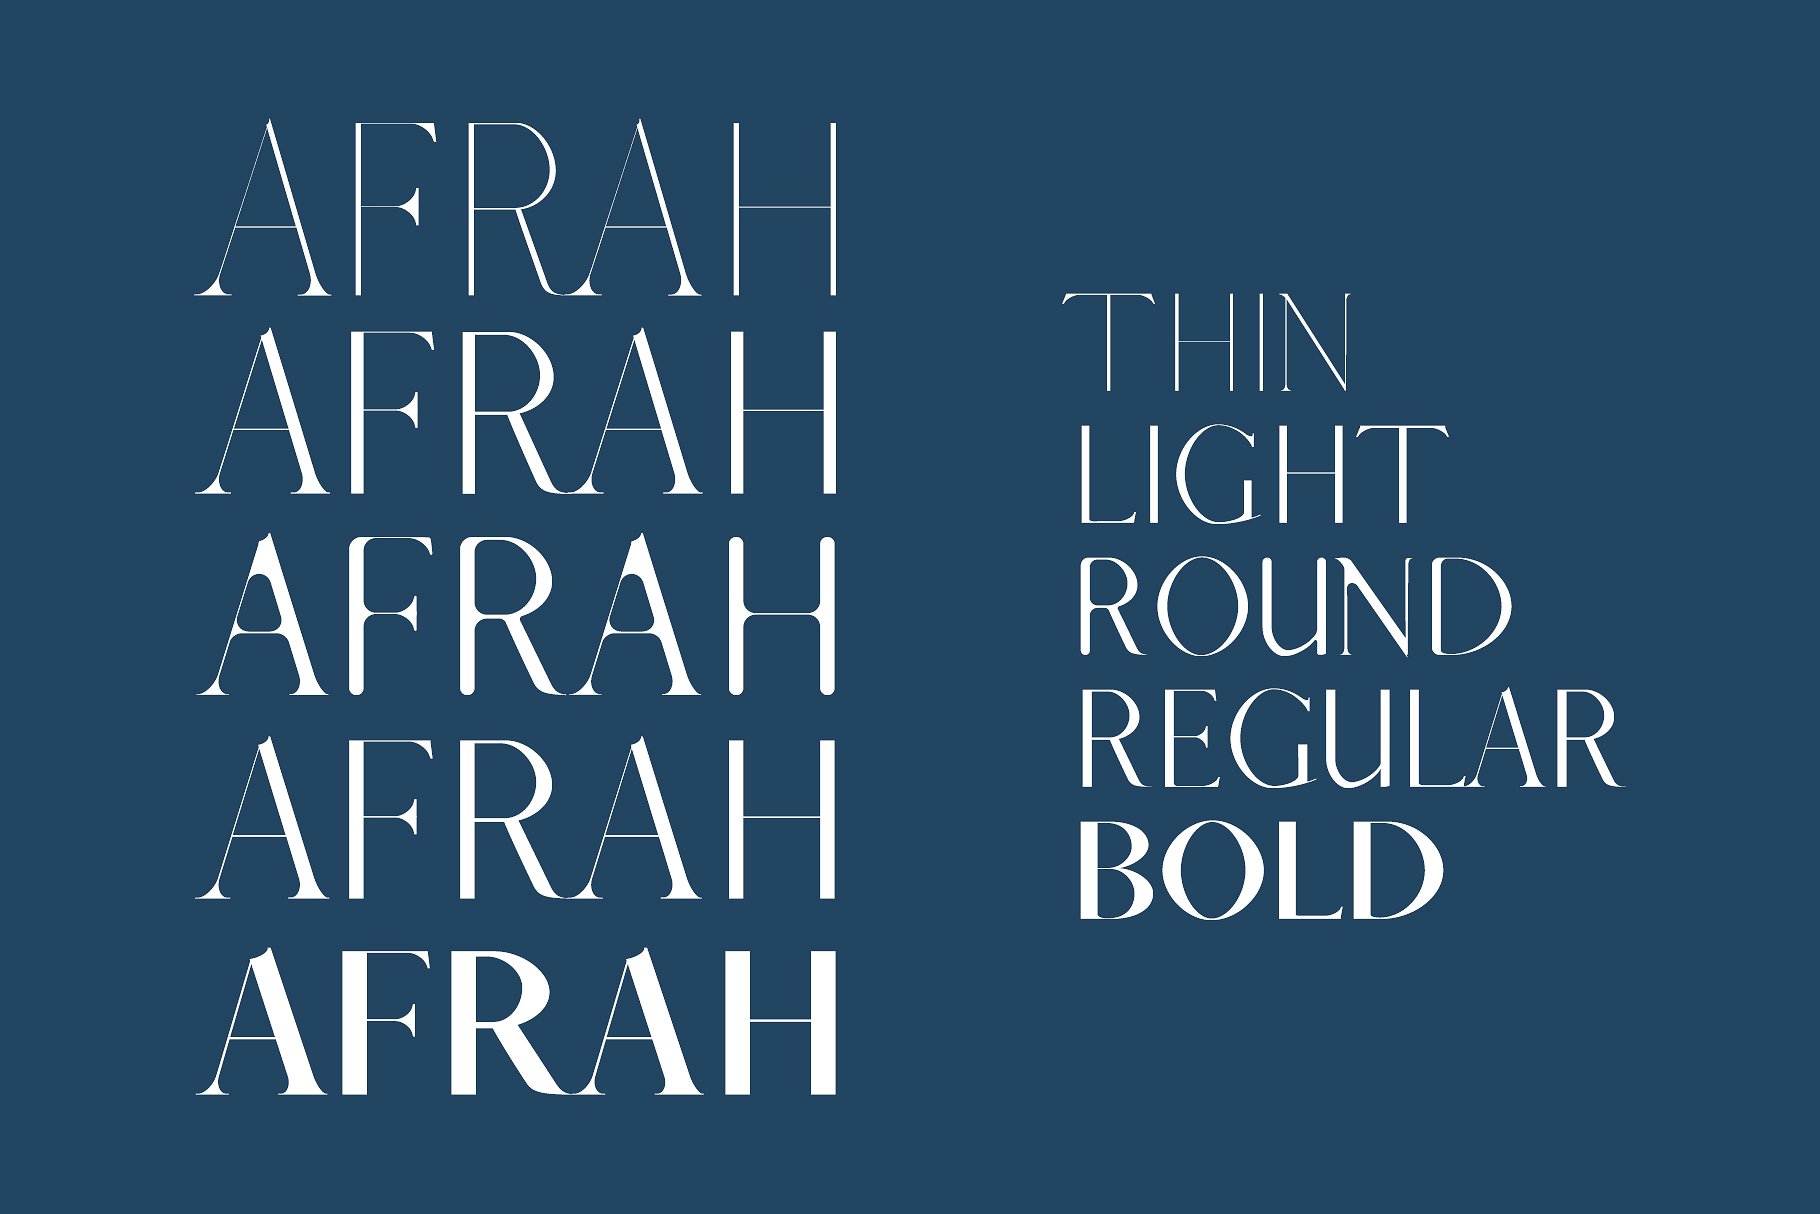 创意设计必备英文衬线字体家族 Afrah Serif Font Family Pack插图